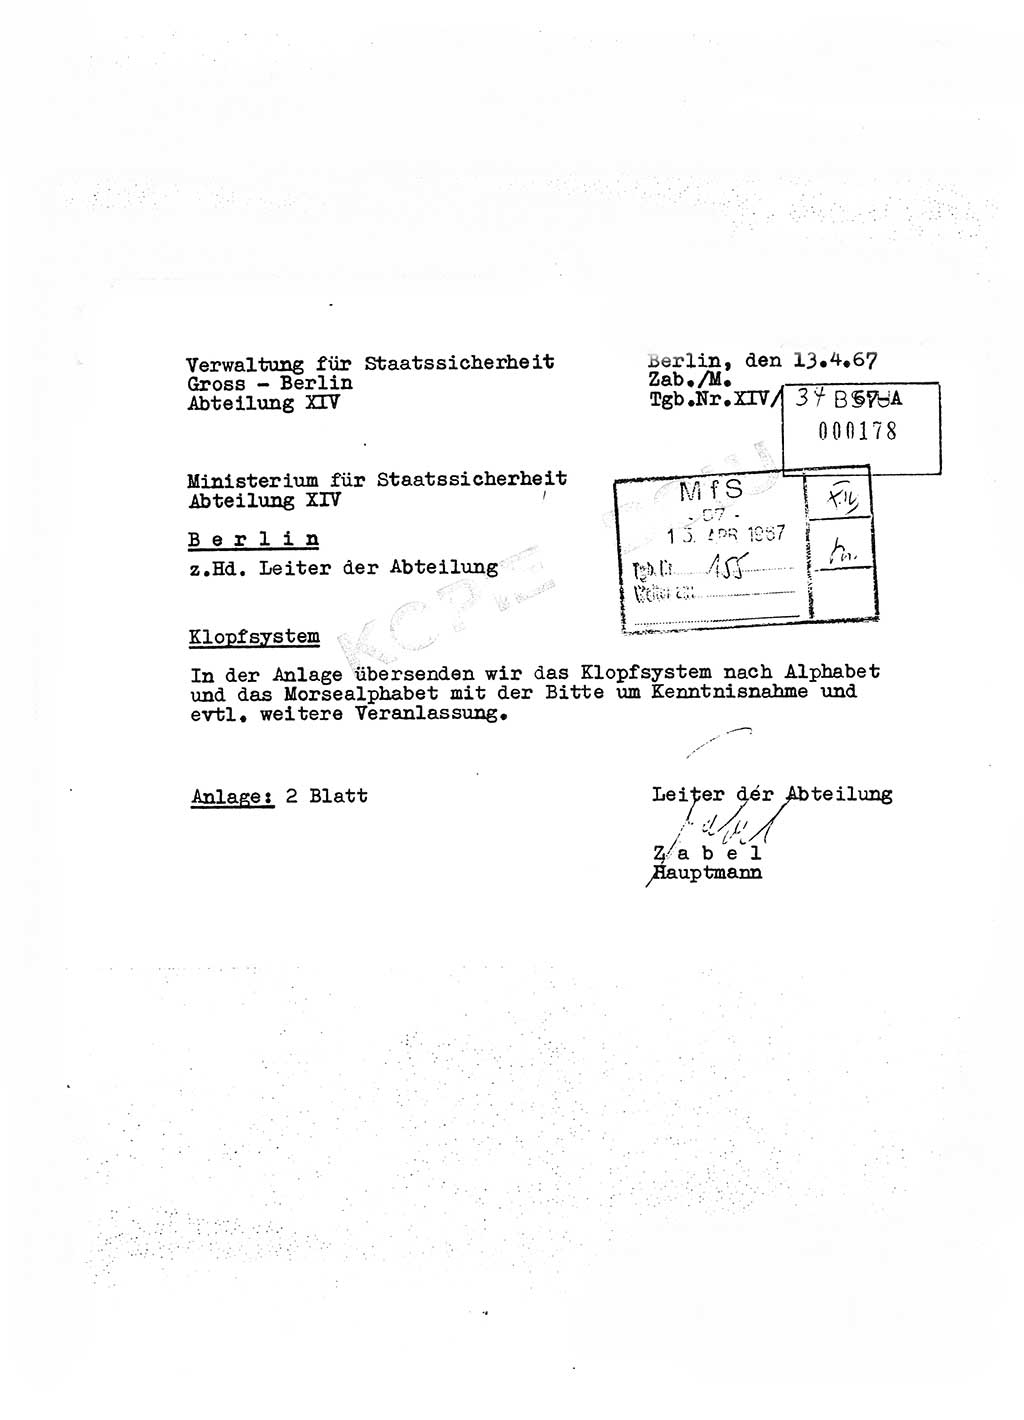 Klopfsystem nach Alphabet und das Morsealphabet, Ministerium für Staatssicherheit (MfS), Deutsche Demokratische Republik (DDR), Abteilung (Abt.) ⅩⅣ, Berlin 1967, Seite 0 (Klopfsys. MfS DDR Abt. ⅩⅣ /67 1967, S. 0)